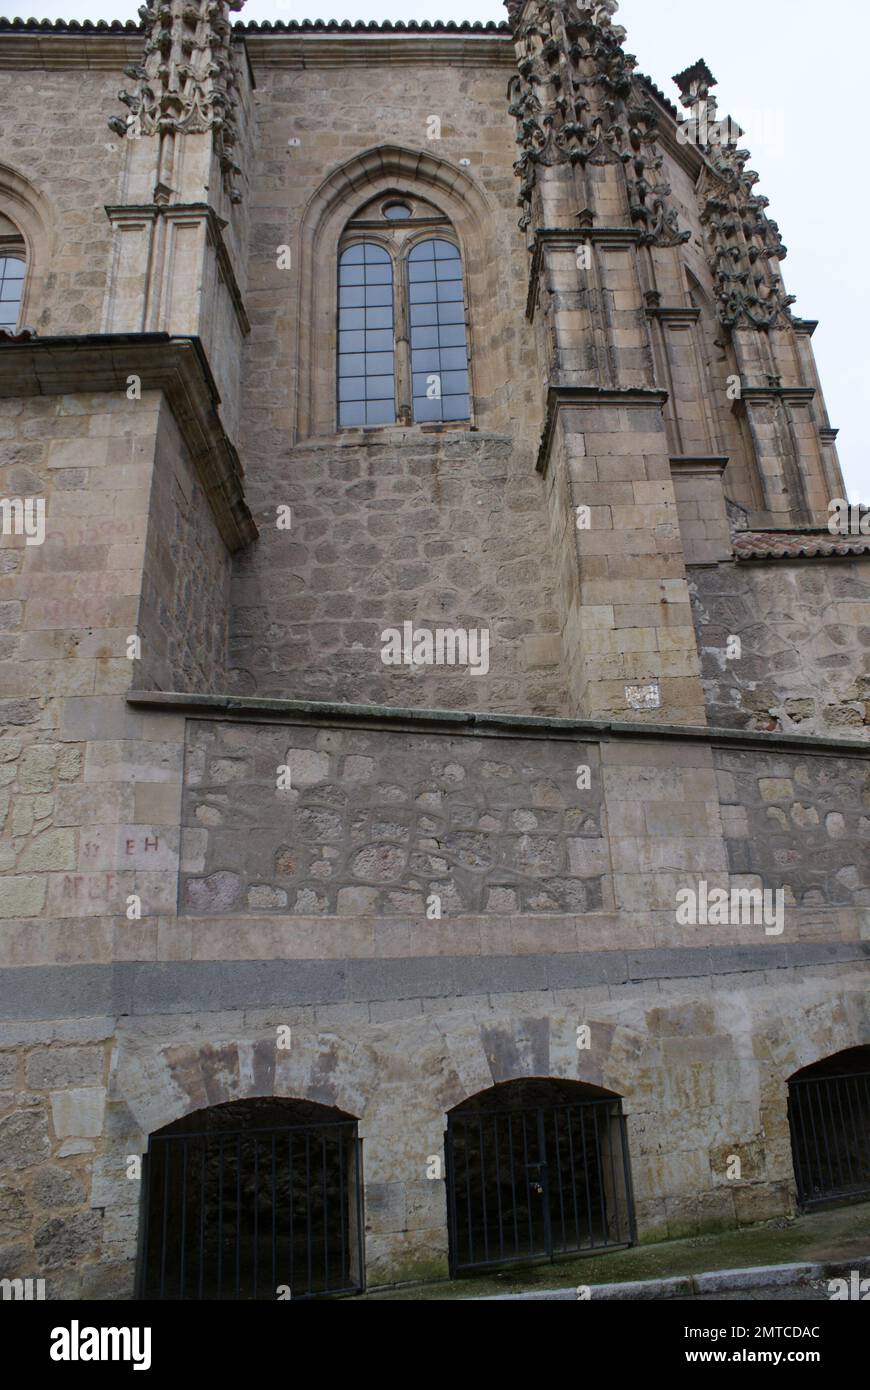 La Iglesia de Sancti Spiritus de Salamanca, es un templo Católico perteneciente al estilo del Gótico tardío, y es el único resto que sobrevive en la a Foto Stock